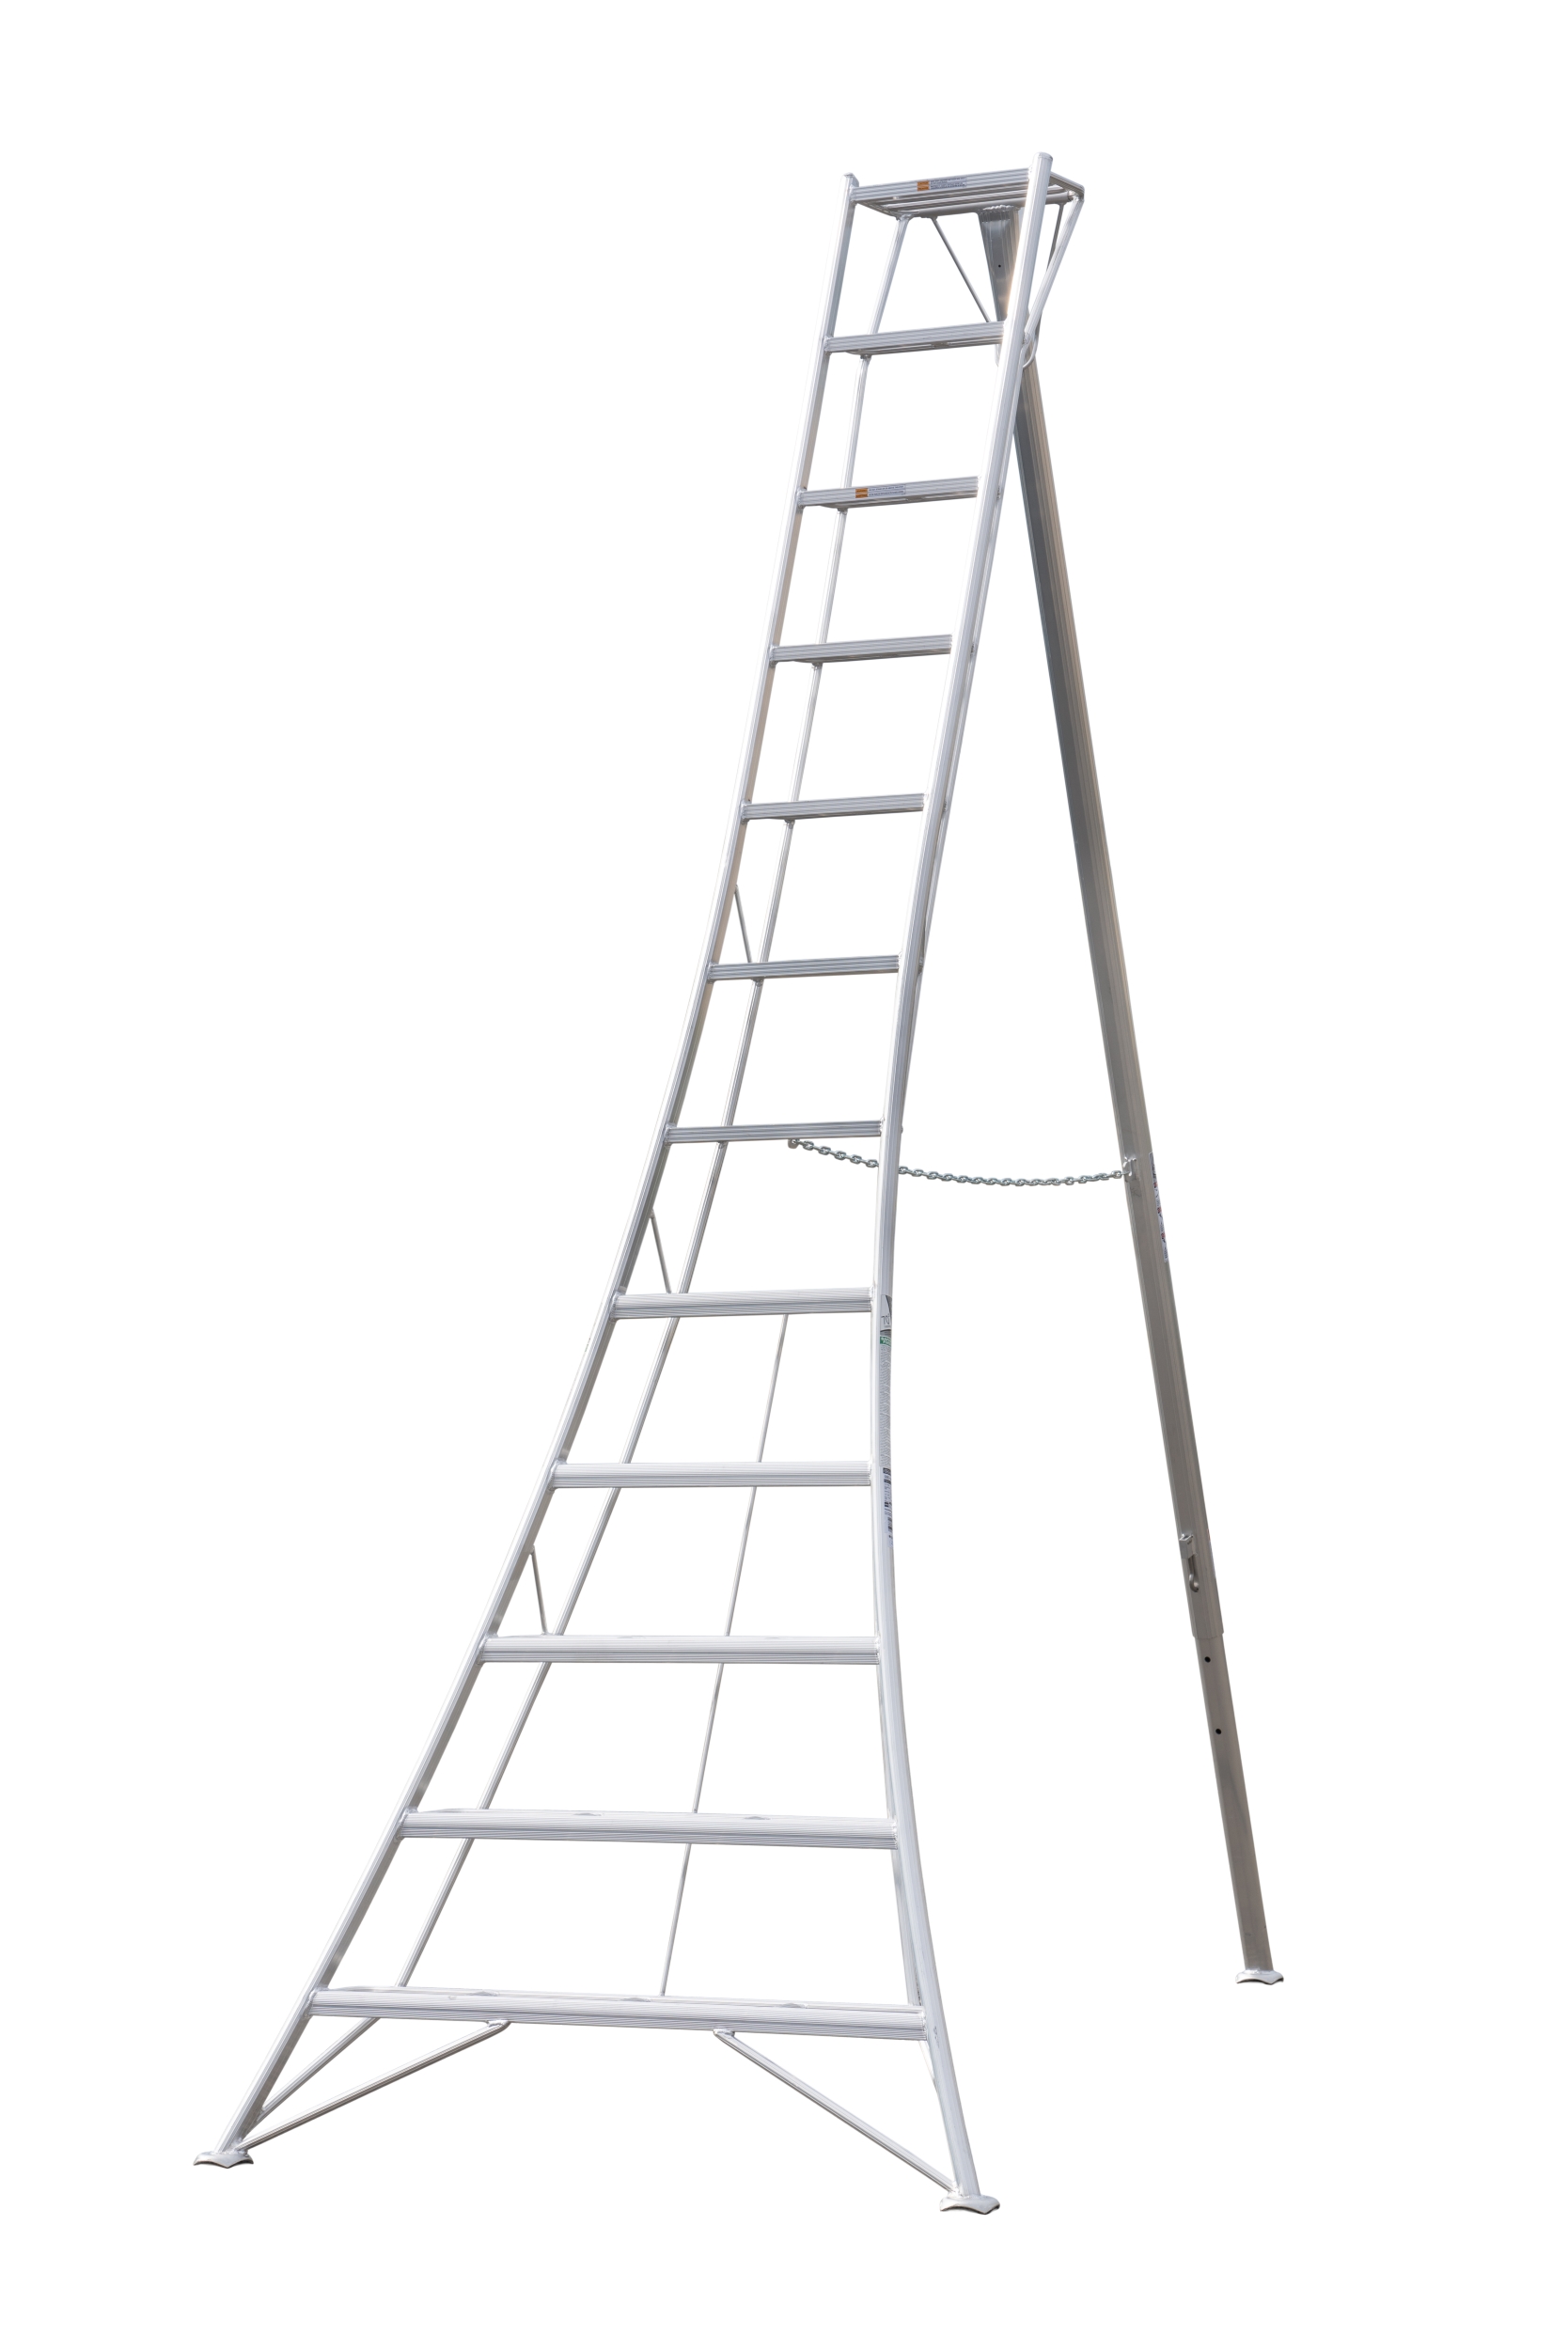 Ladder 12 ft Standard Tripod 39 lbs Hasegawa